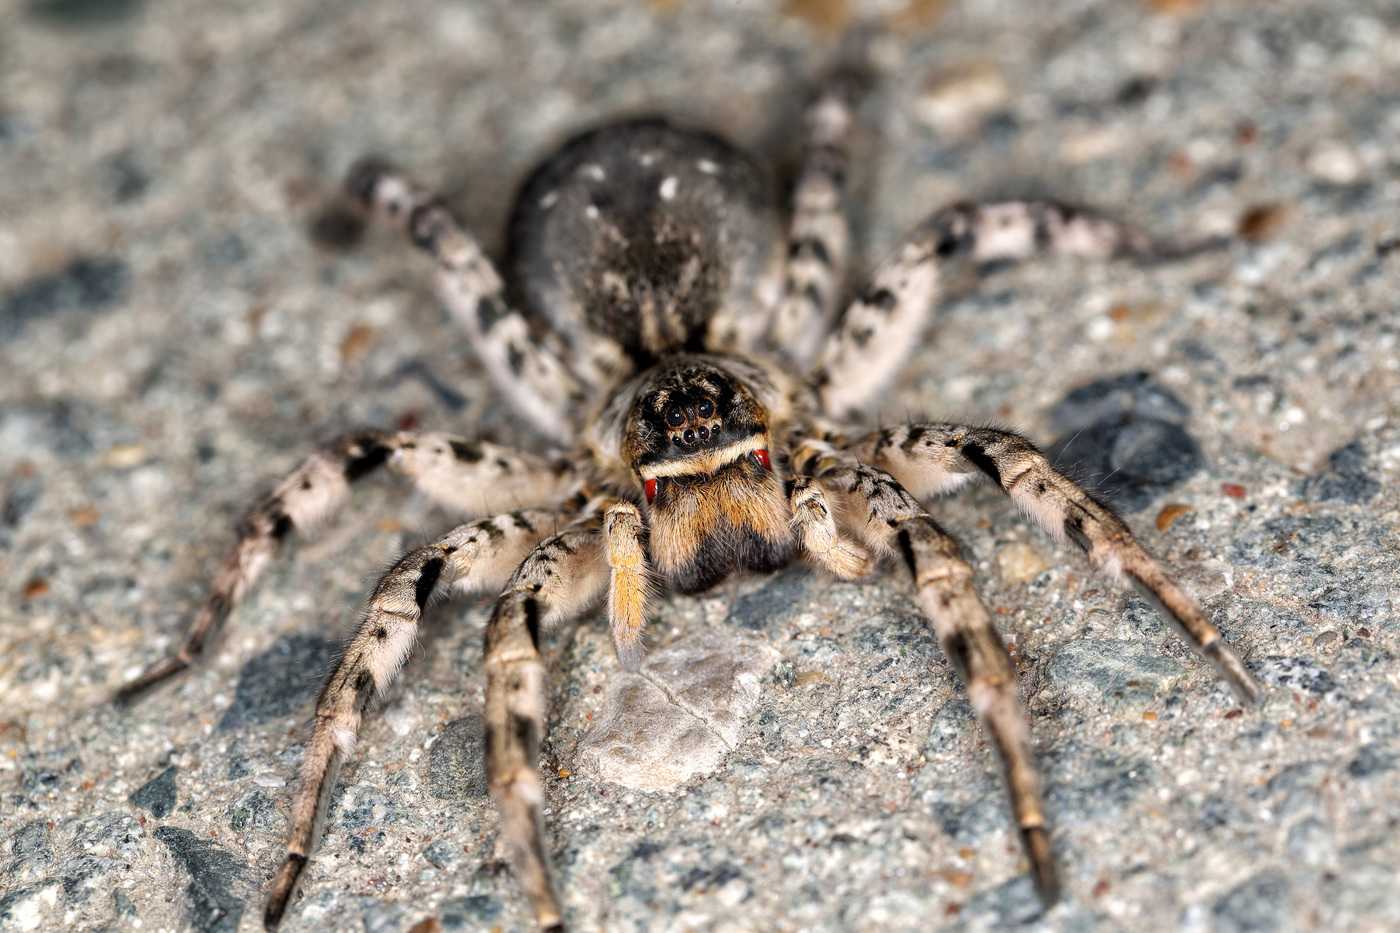 Тарантул: виды, фото, описание, содержание. как выглядит паук тарантул: кто такой; ядовитый он или нет